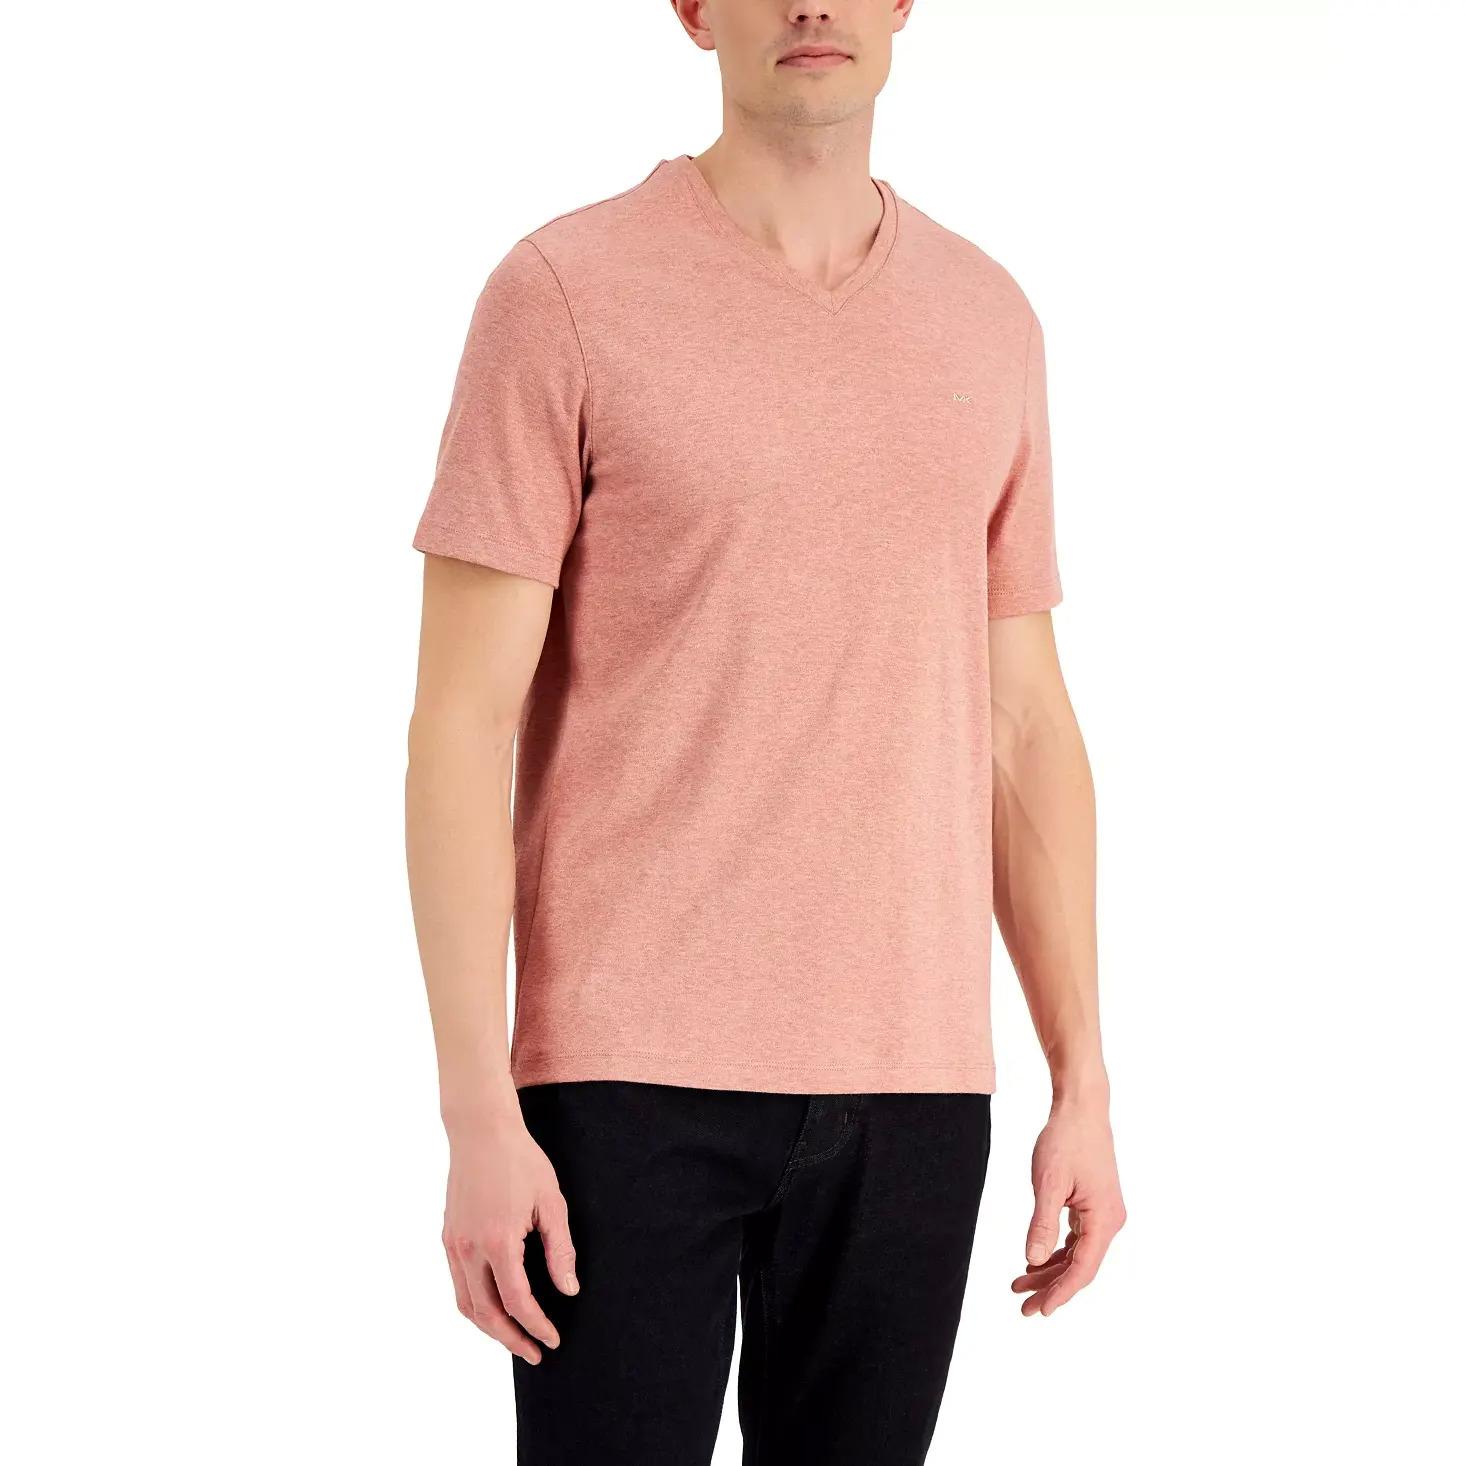 Michael Kors Mens V-Neck T-Shirt for $9.96